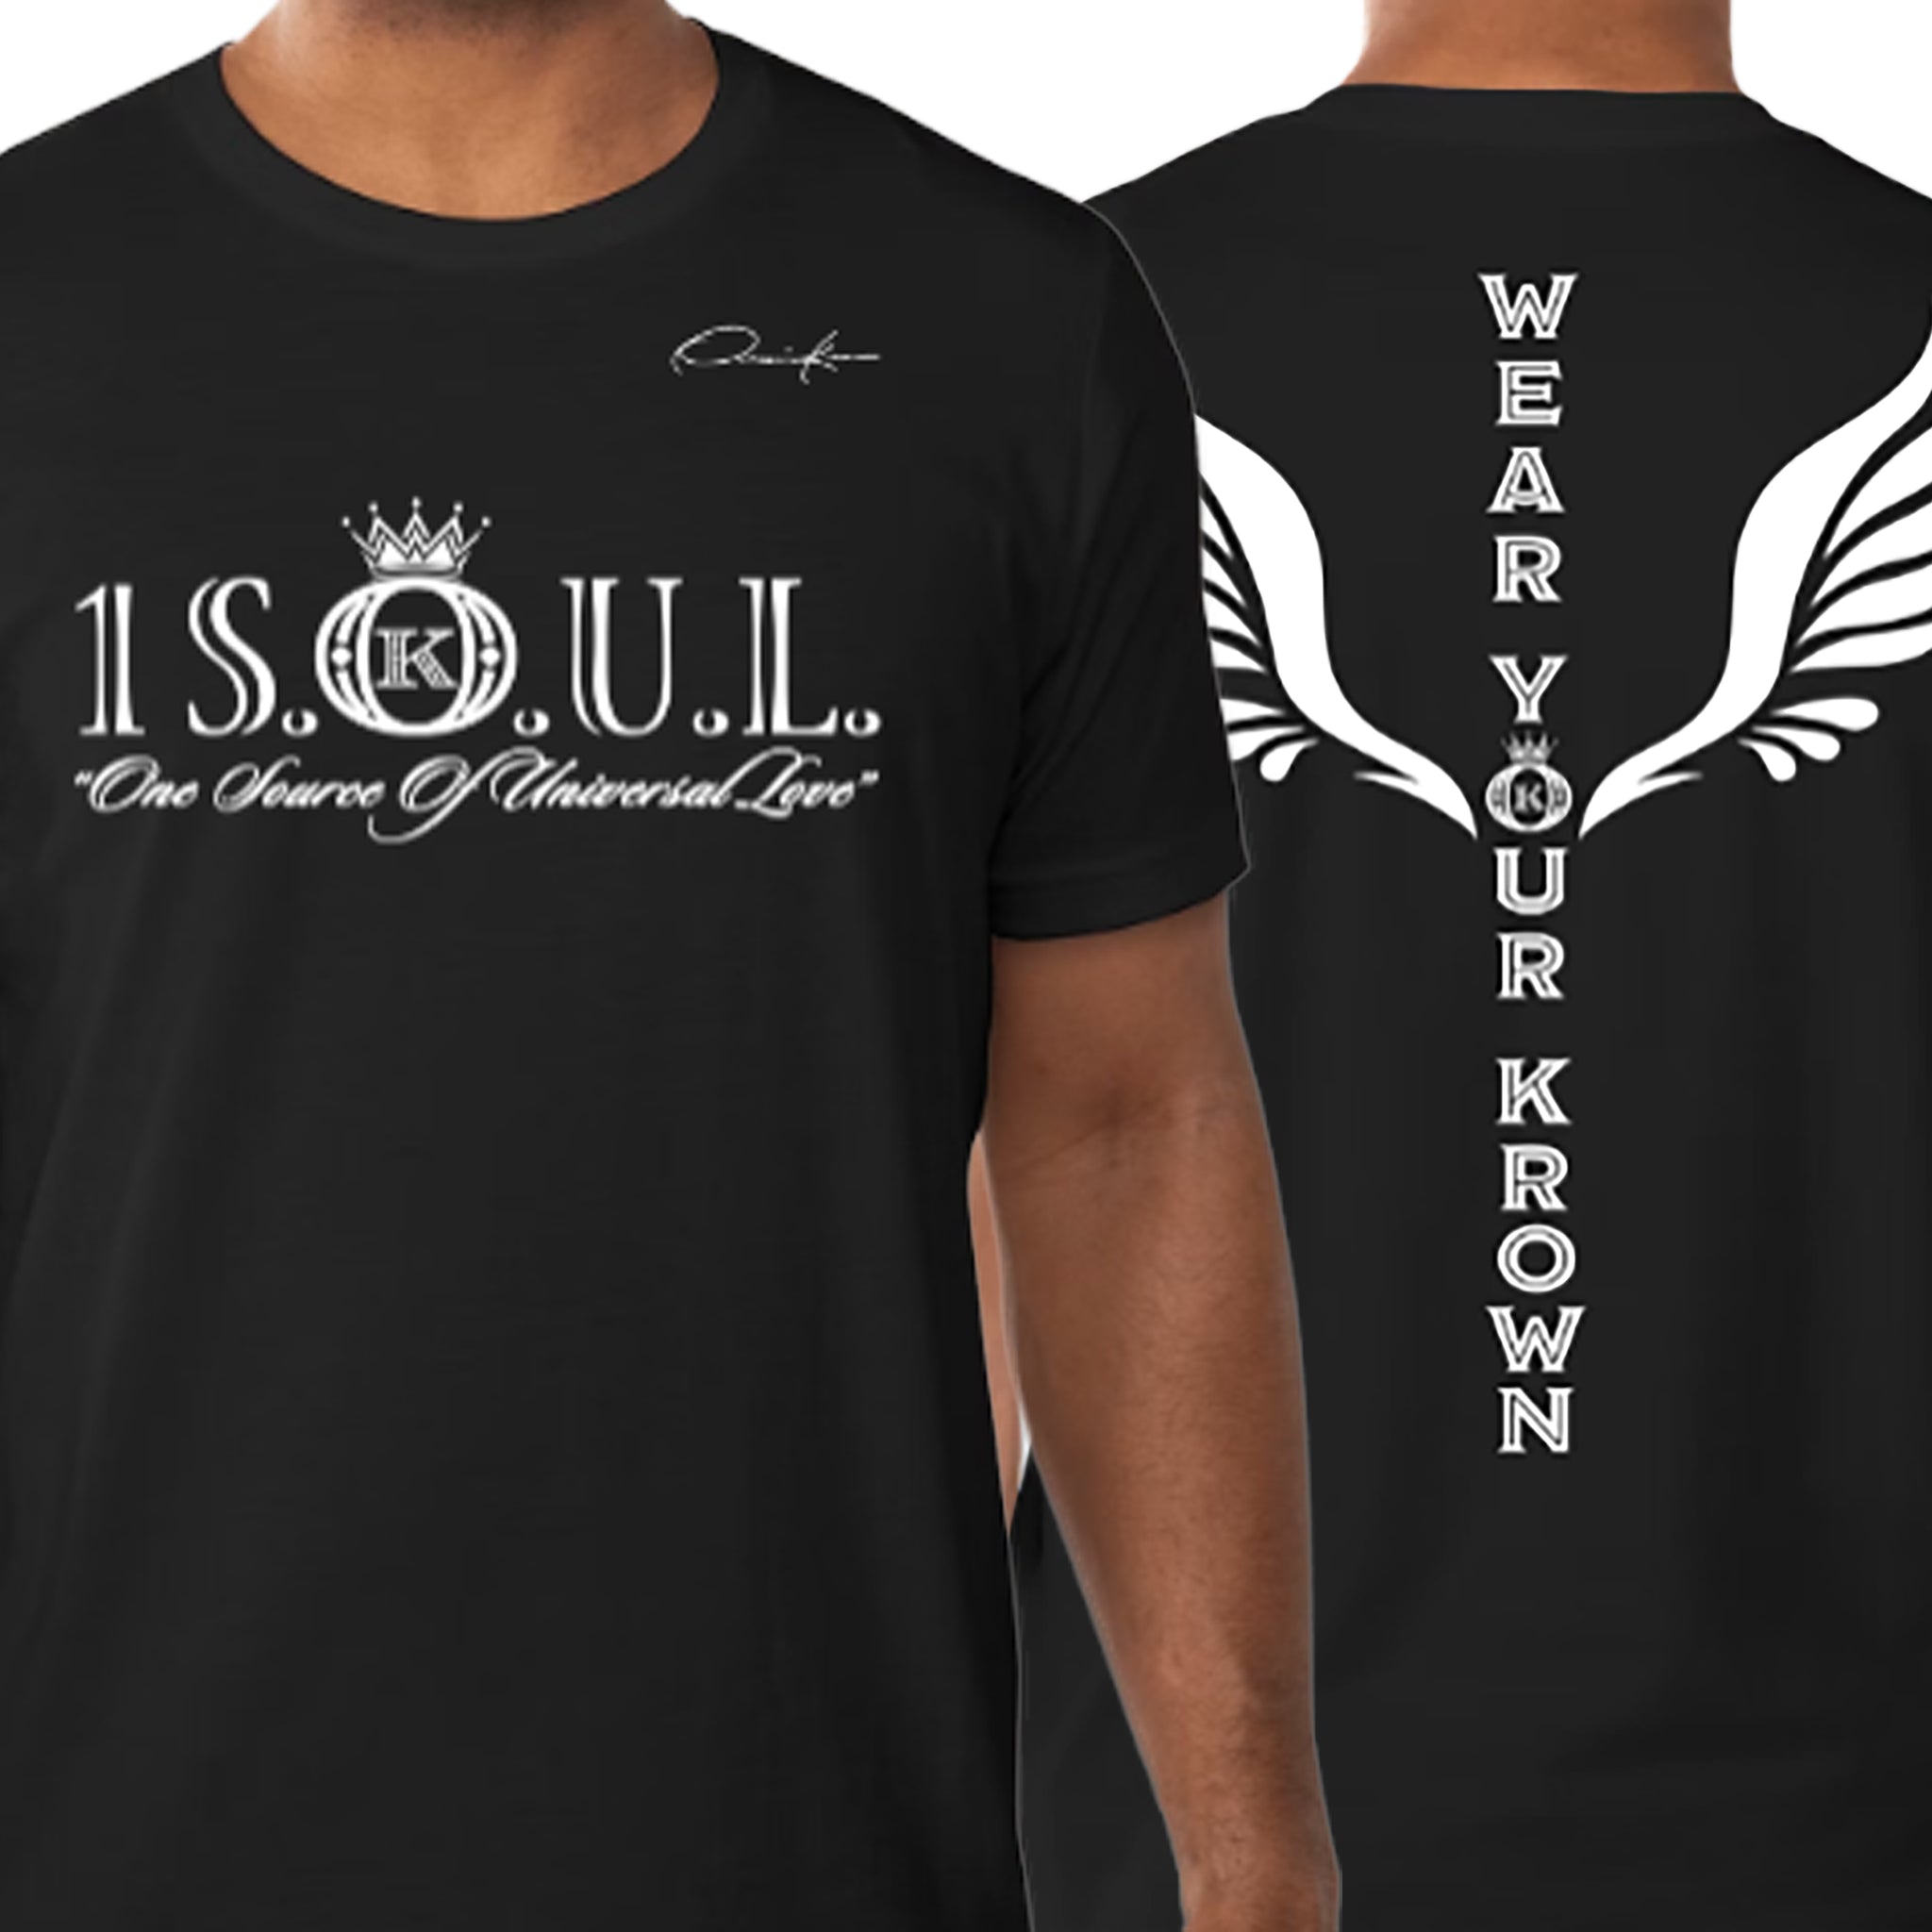 1 S.O.U.L. black t-shirt gear